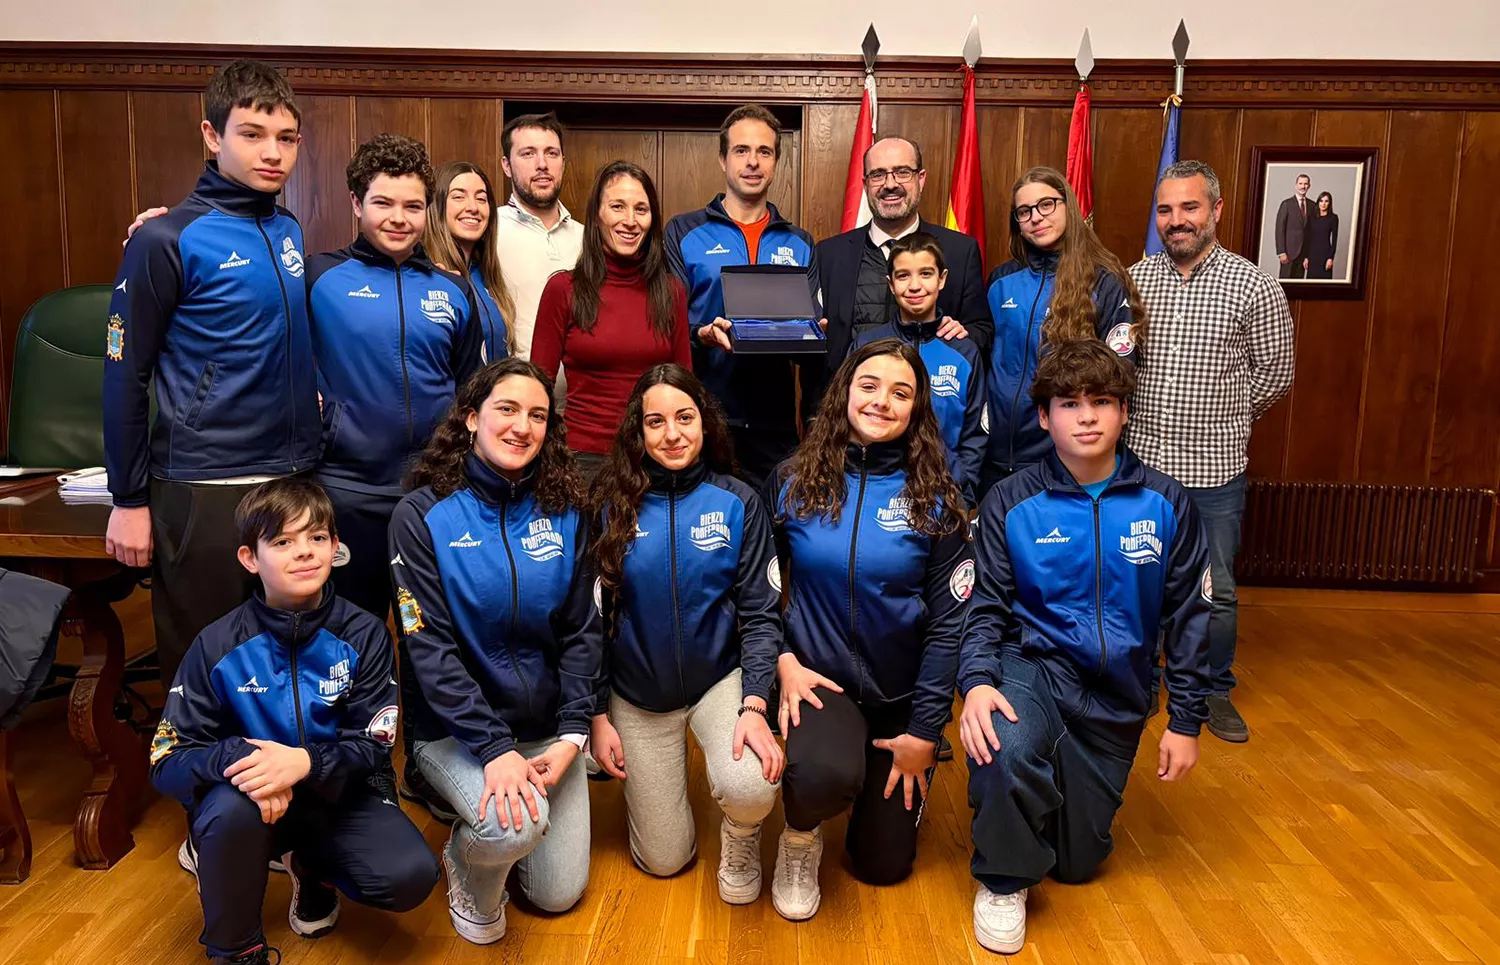 Morala reconoce los méritos del Club Natación Bierzo: "El deporte ponferradino es un ejemplo y una referencia"